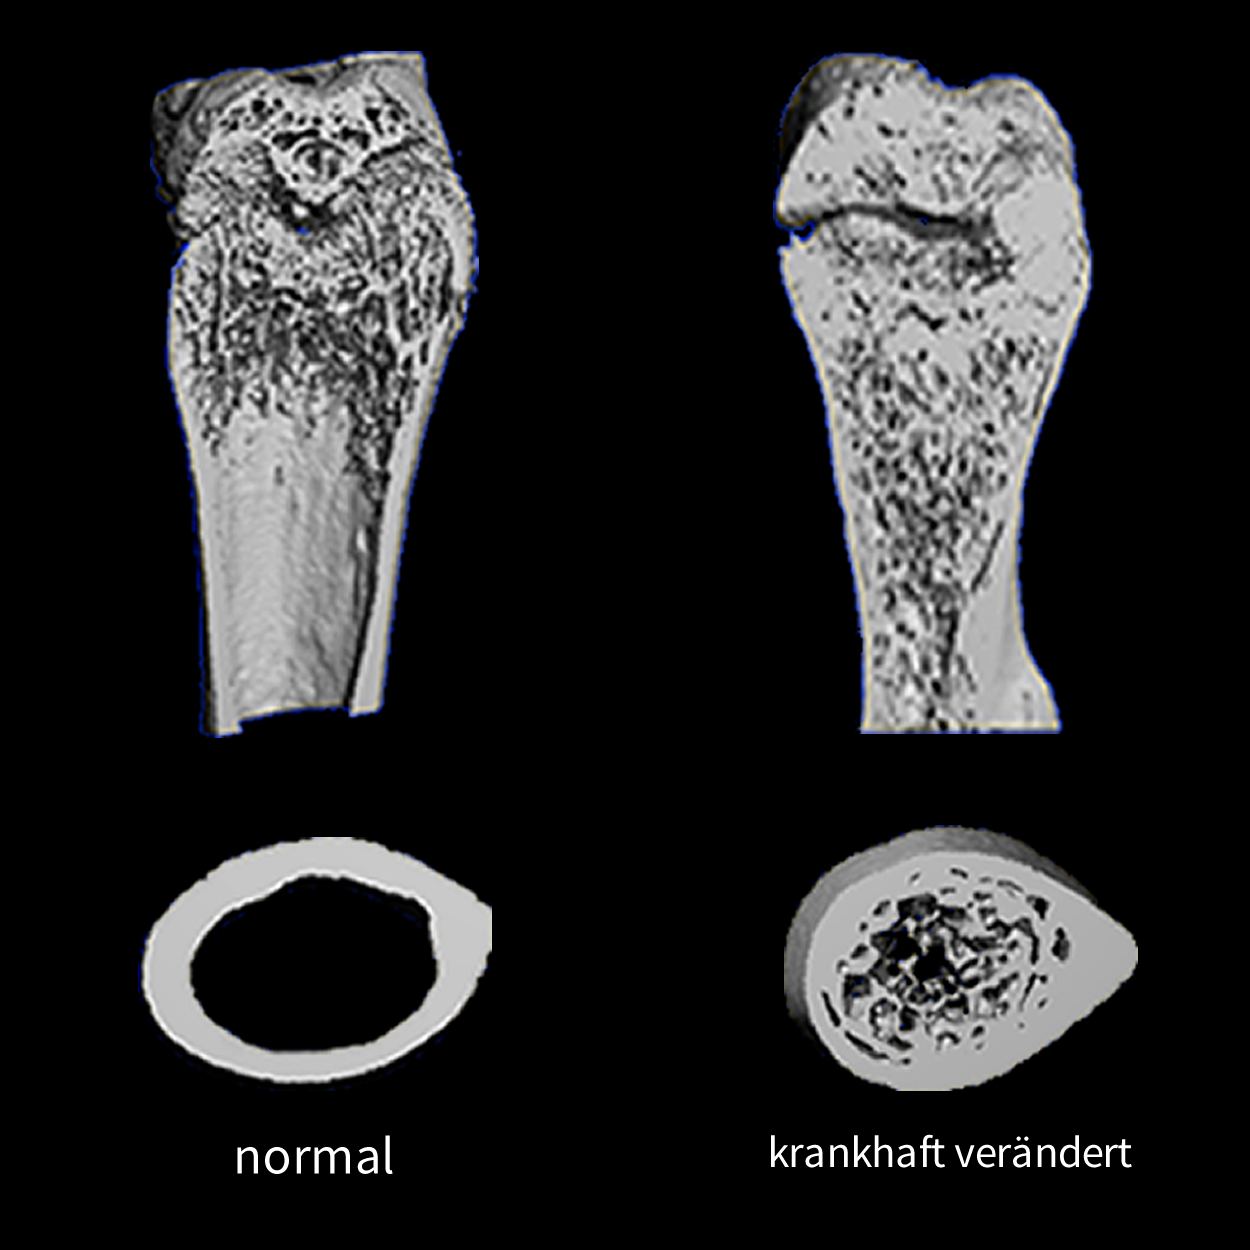 Normale Knochen und krankhaft veränderter Knochen Abb. © Gruppe Waskow / FLI